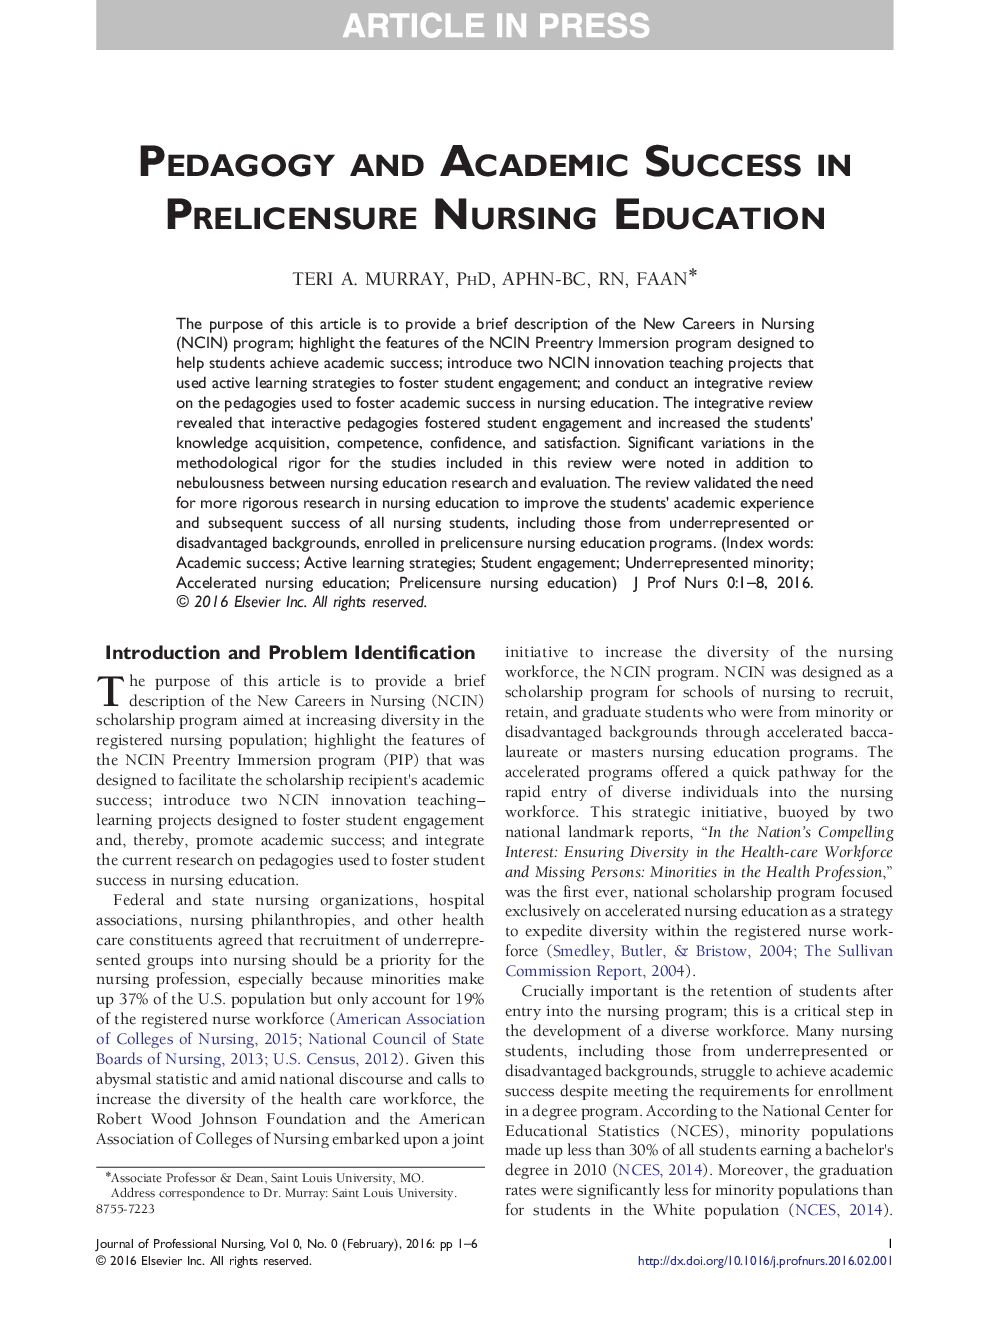 آموزش و پرورش و موفقیت تحصیلی در پرستاری آموزش پرستاری 